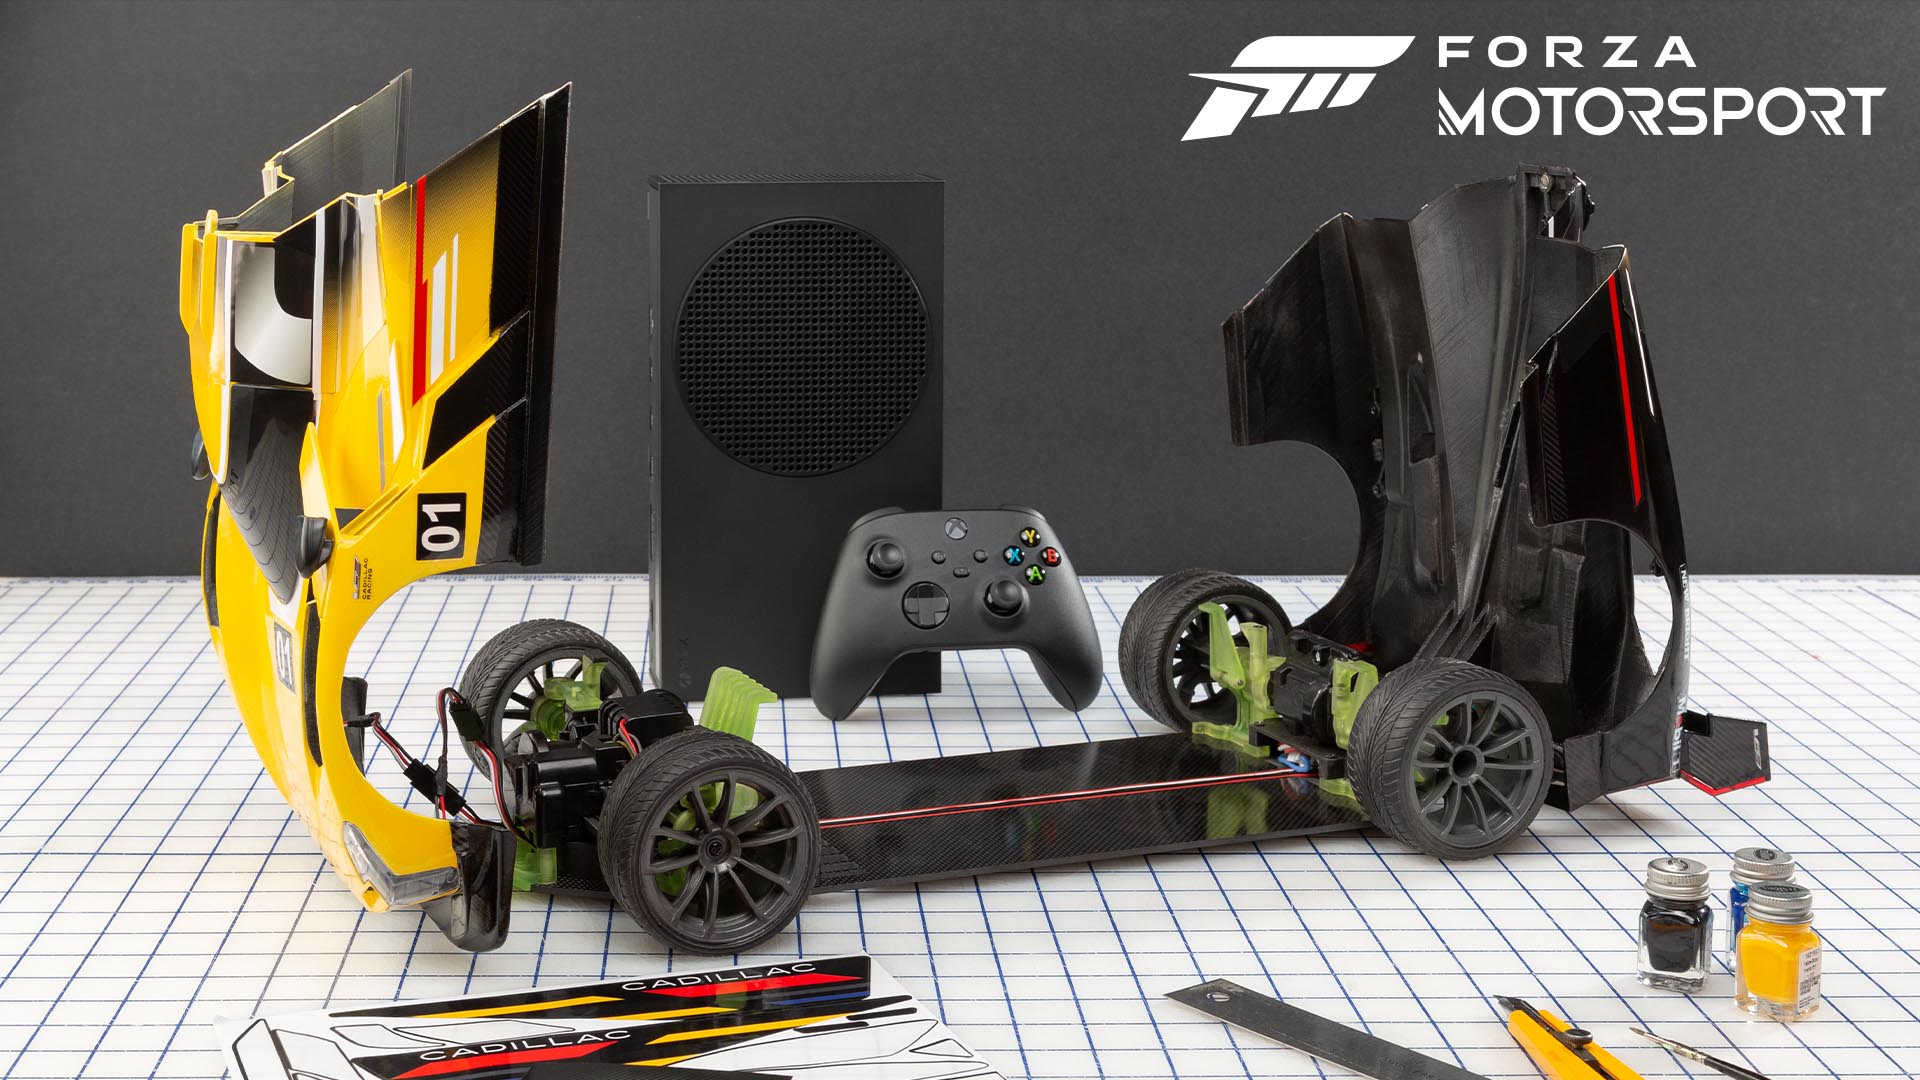 Forza Motorsport』、Xbox Series S - 1TB (ブラック) が収納された